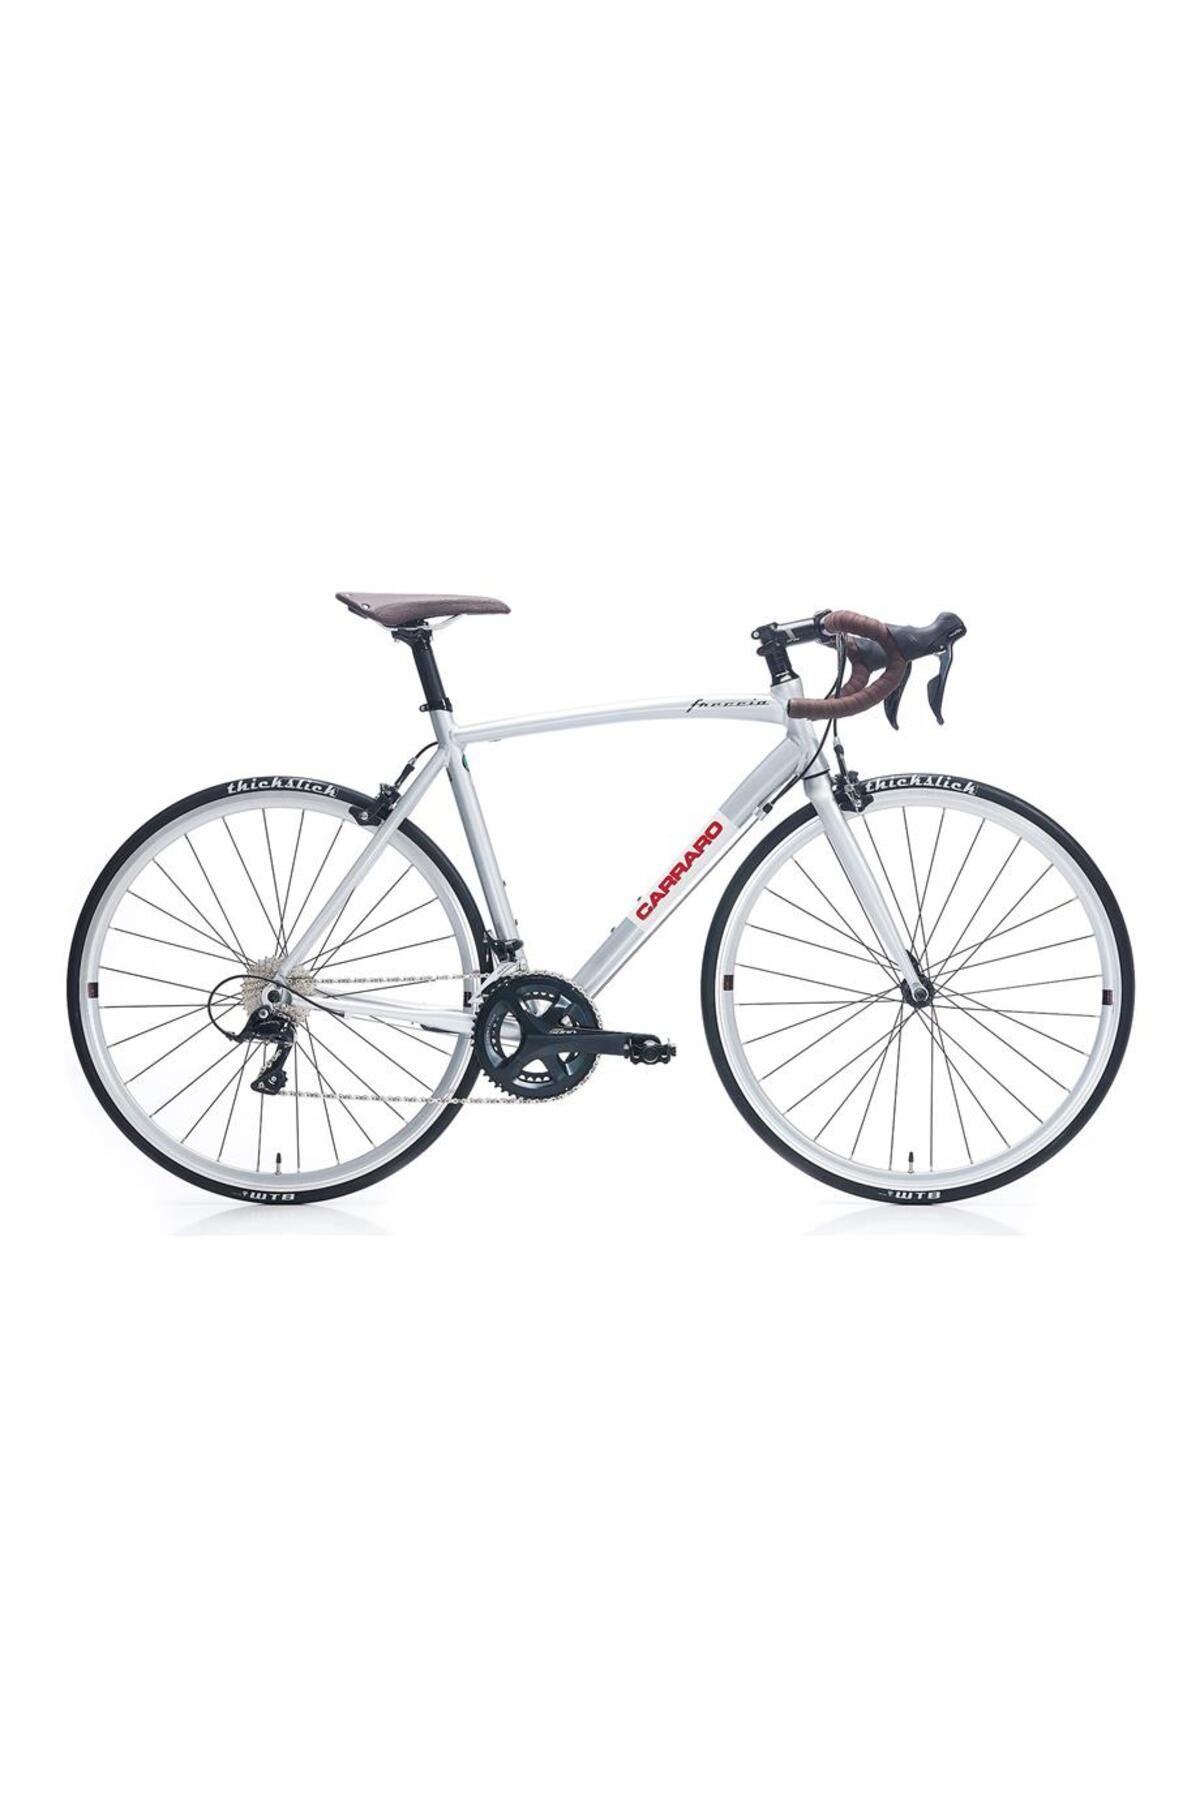 Carraro Freccıa Erkek Yol Yarış Bisikleti 520h V 28 Jant 18 Vites Gümüş Beyaz Kırmızı Siyah